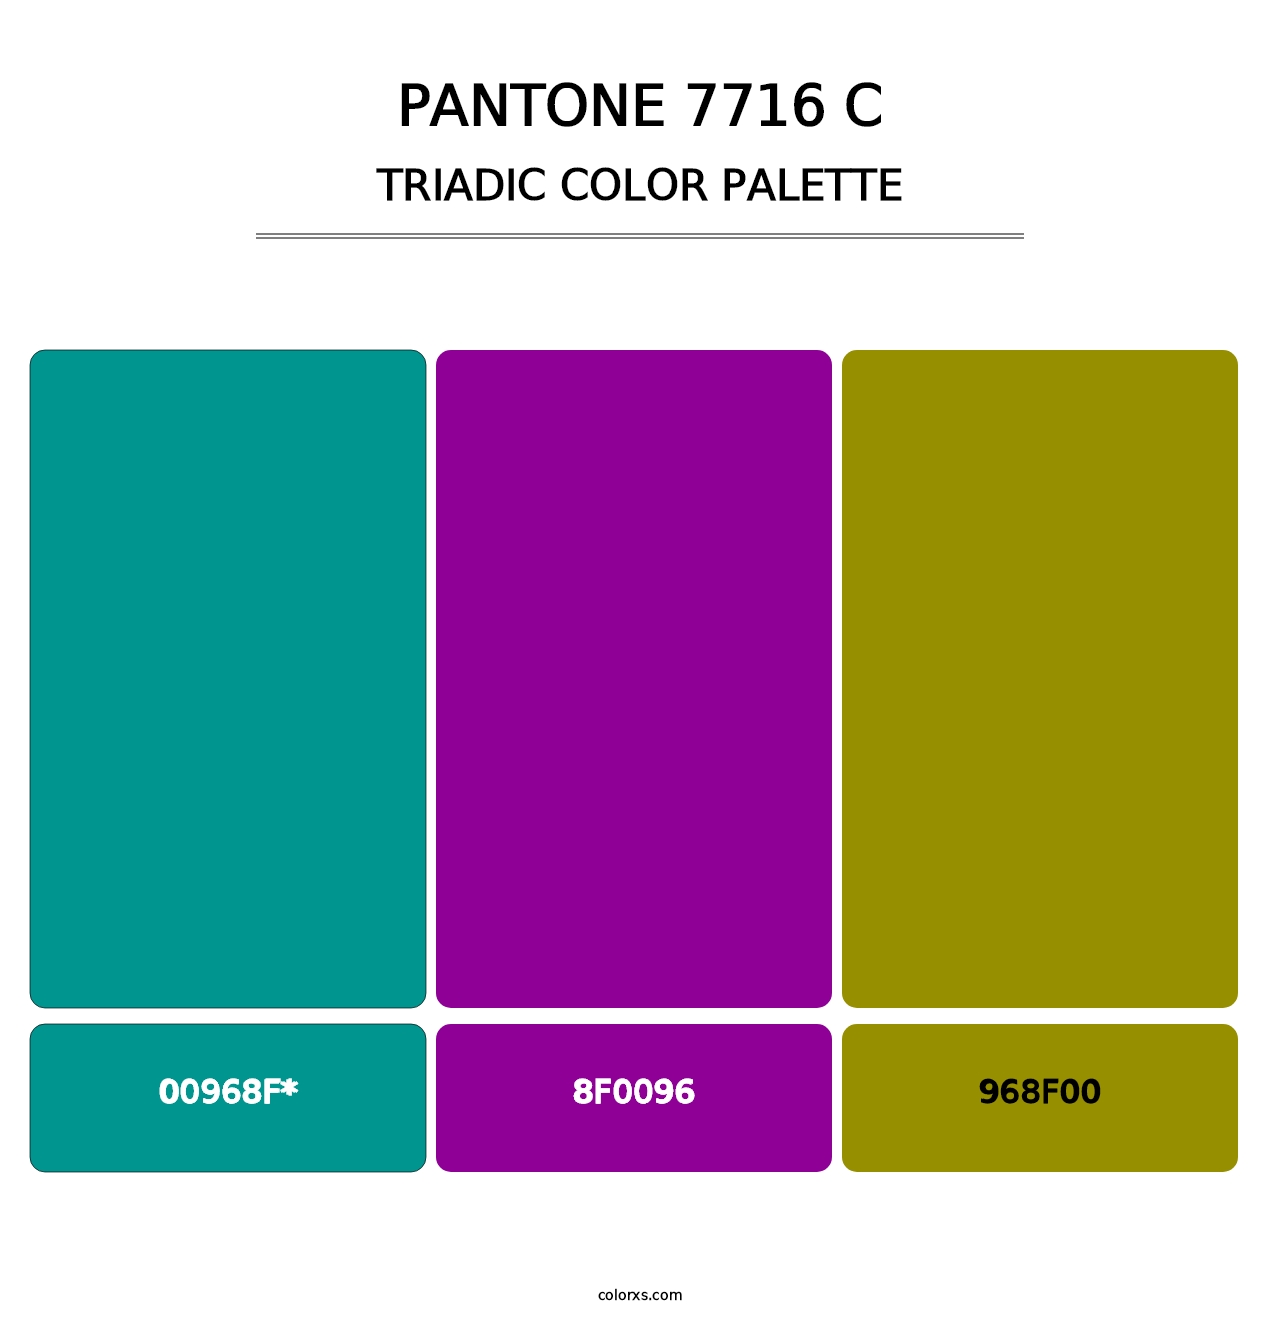 PANTONE 7716 C - Triadic Color Palette